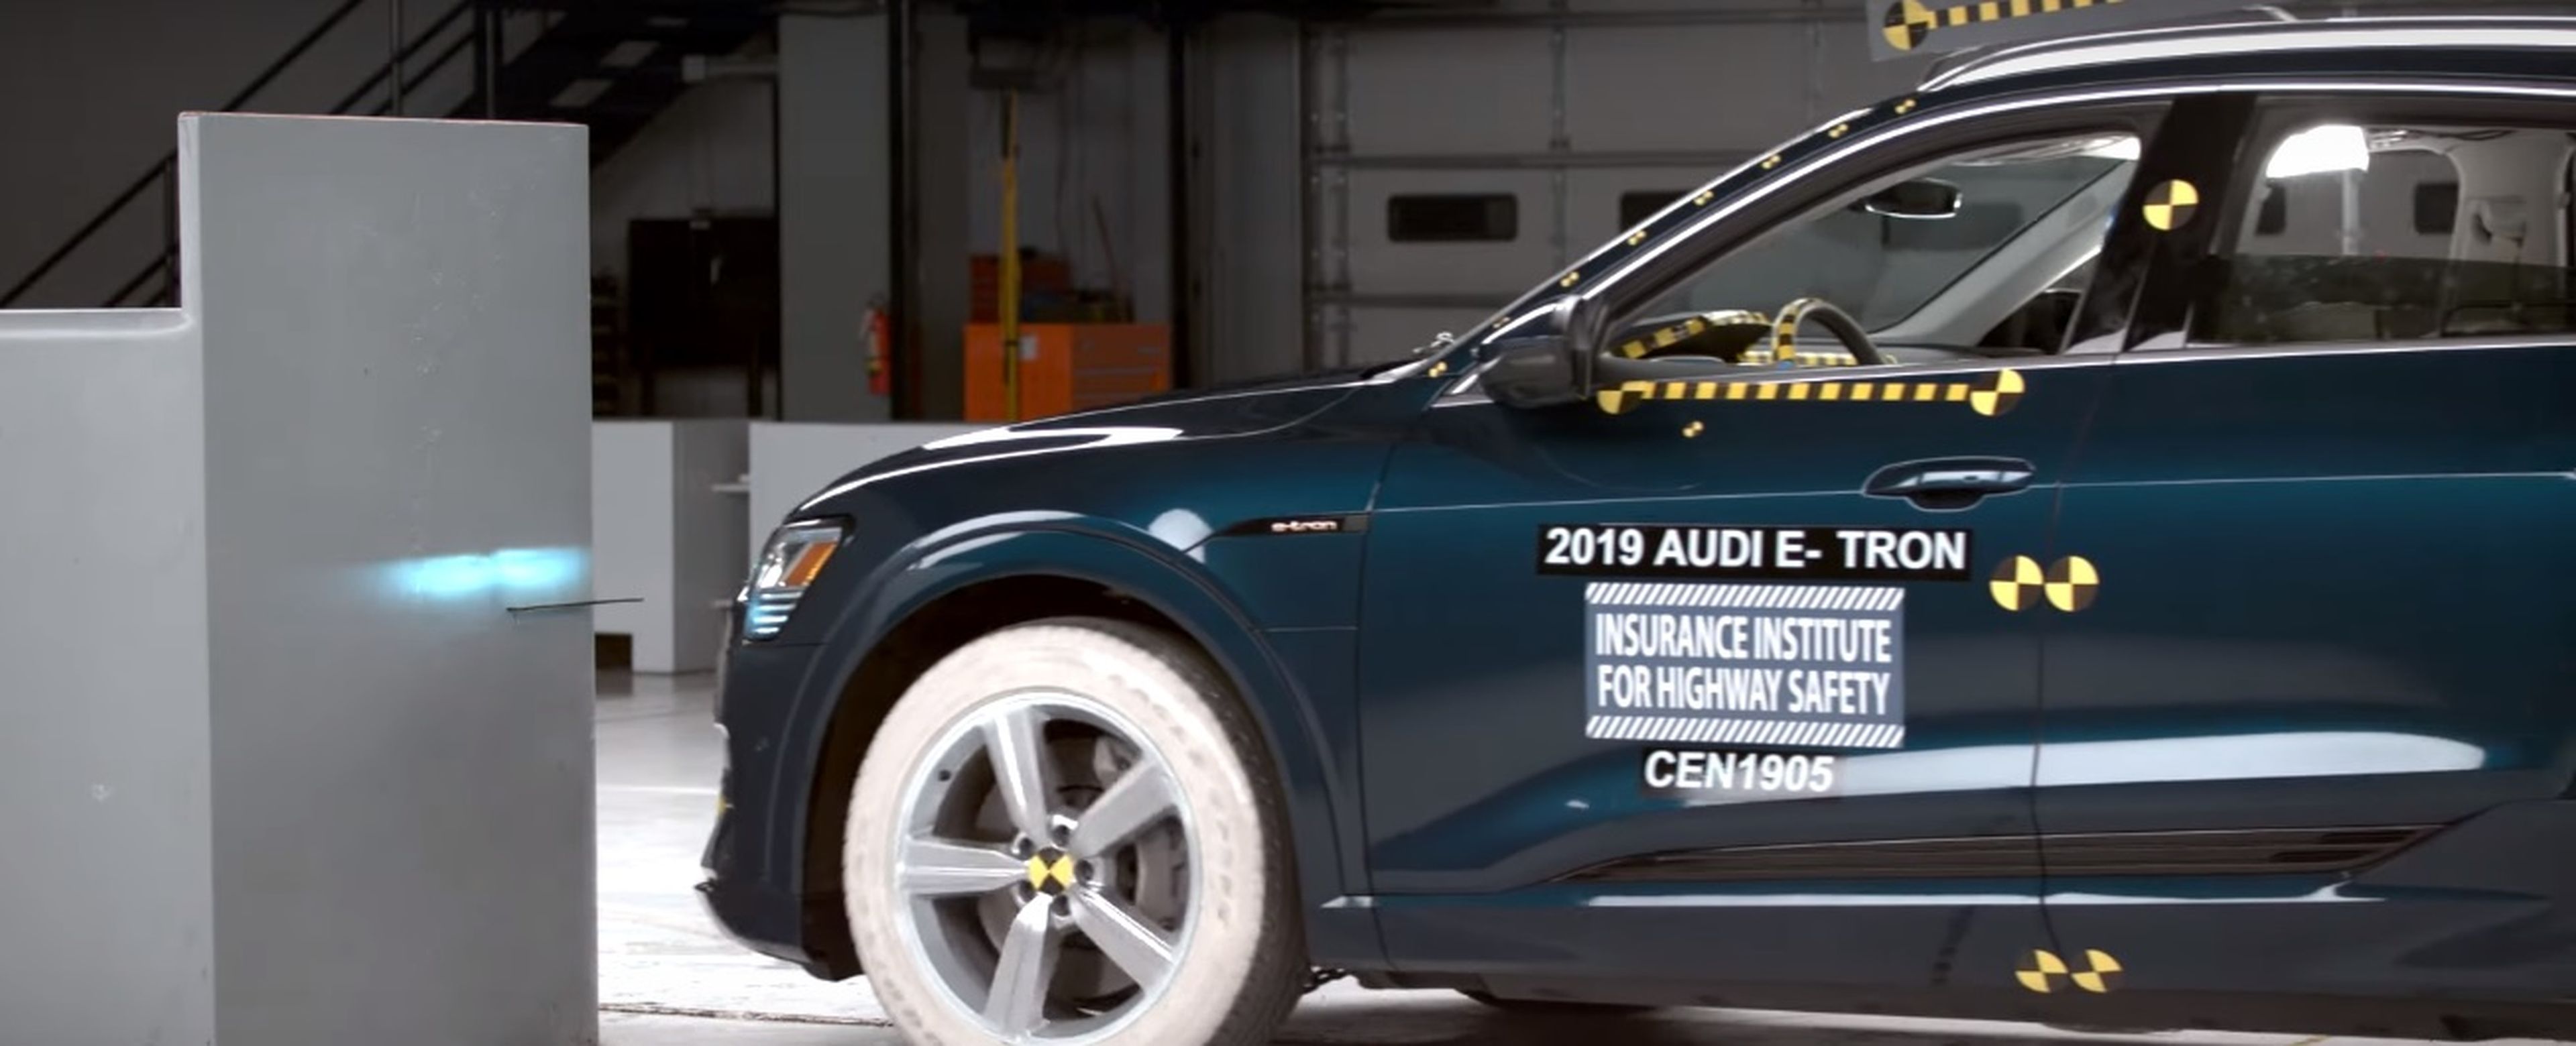 Audi e-tron 2019 es el coche eléctrico más seguro de 2019